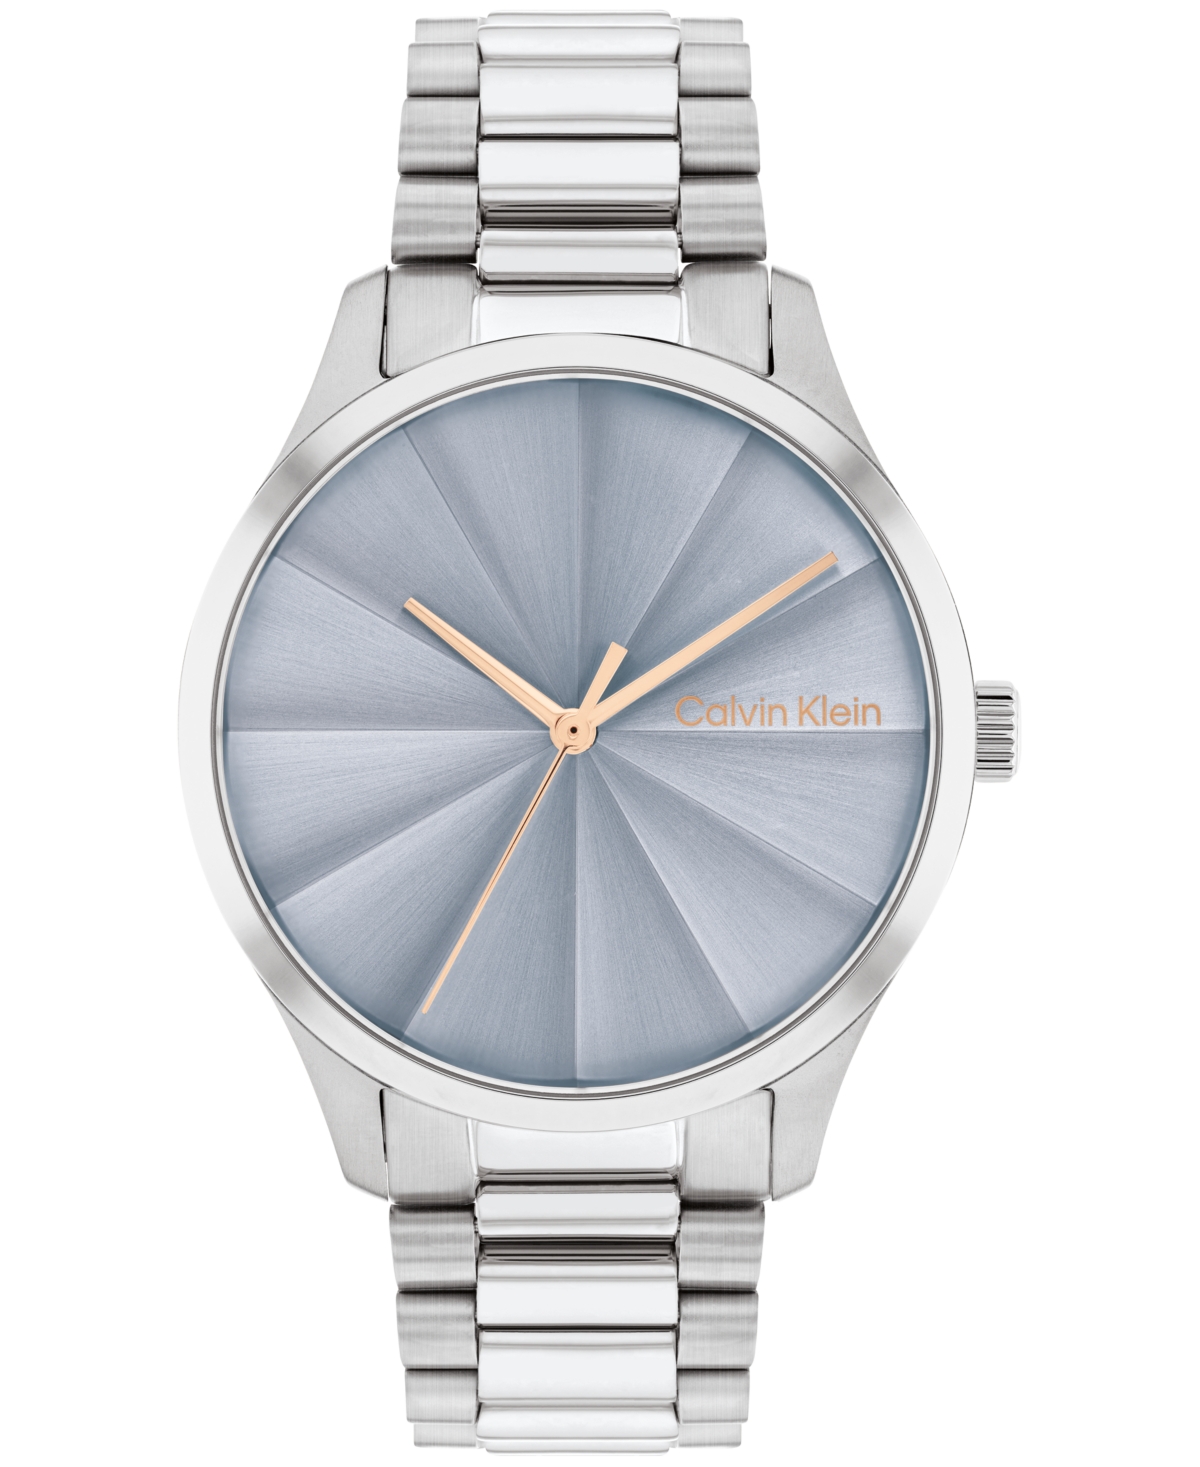 Calvin Klein Unisex 3-hand Silver-tone Stainless Steel Bracelet Watch 35mm